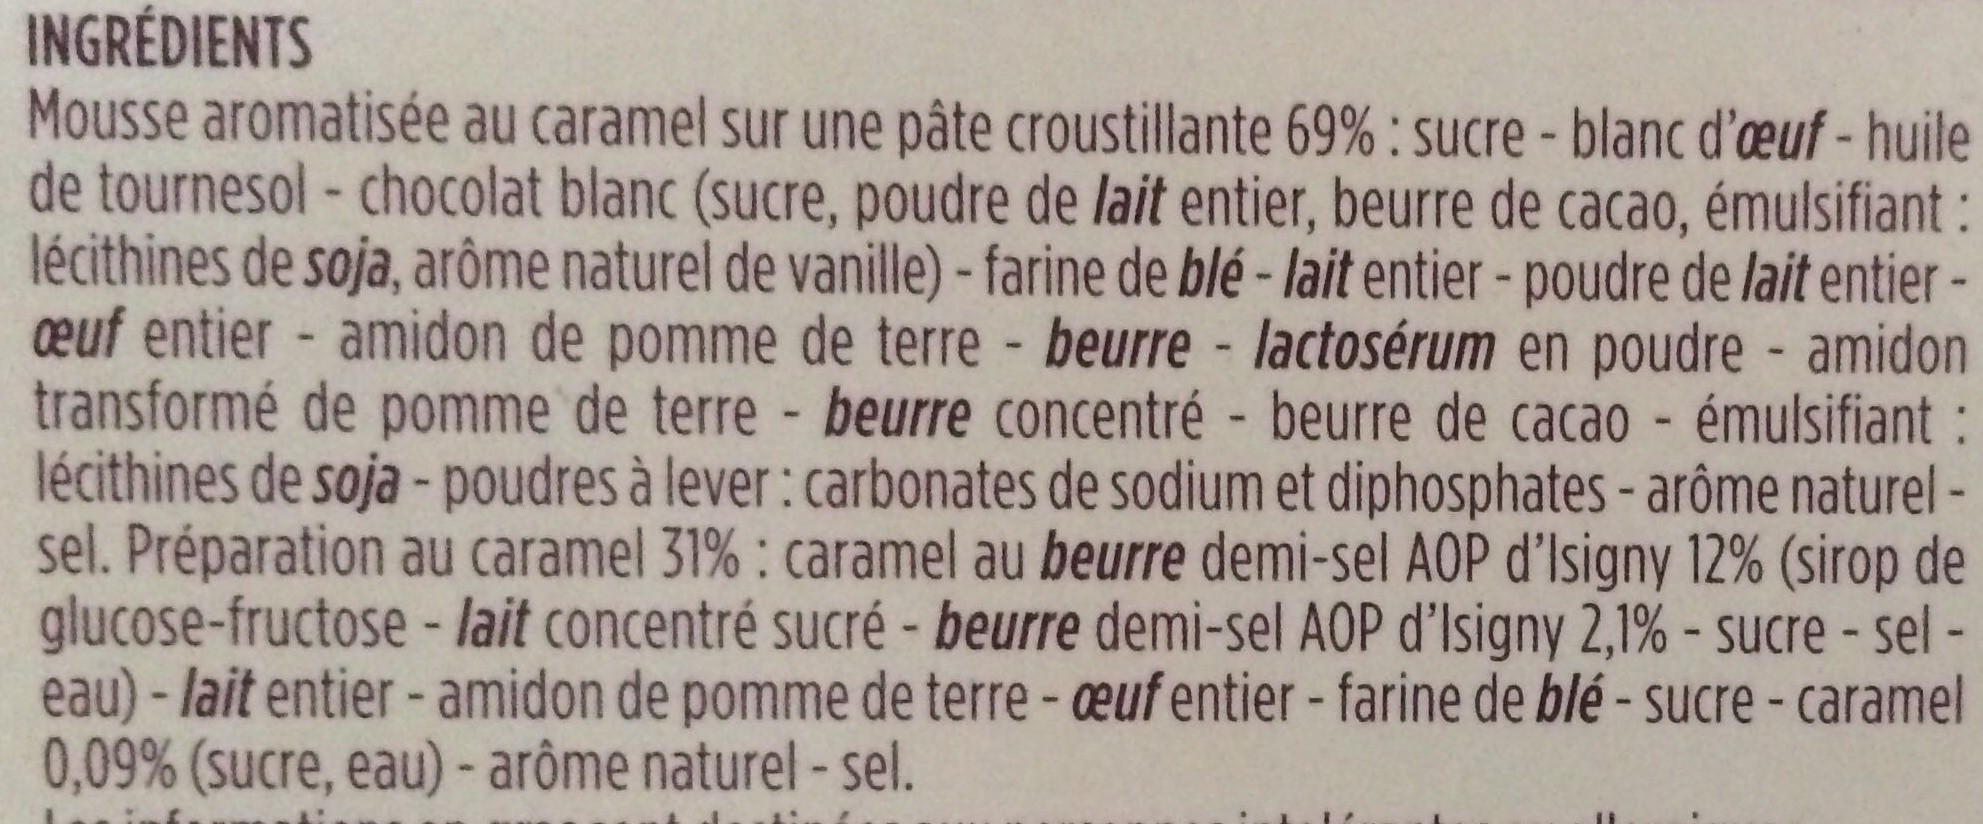 Tartelette Caramel Beurre Demi-Sel AOP d'Isigny - Ingredients - fr